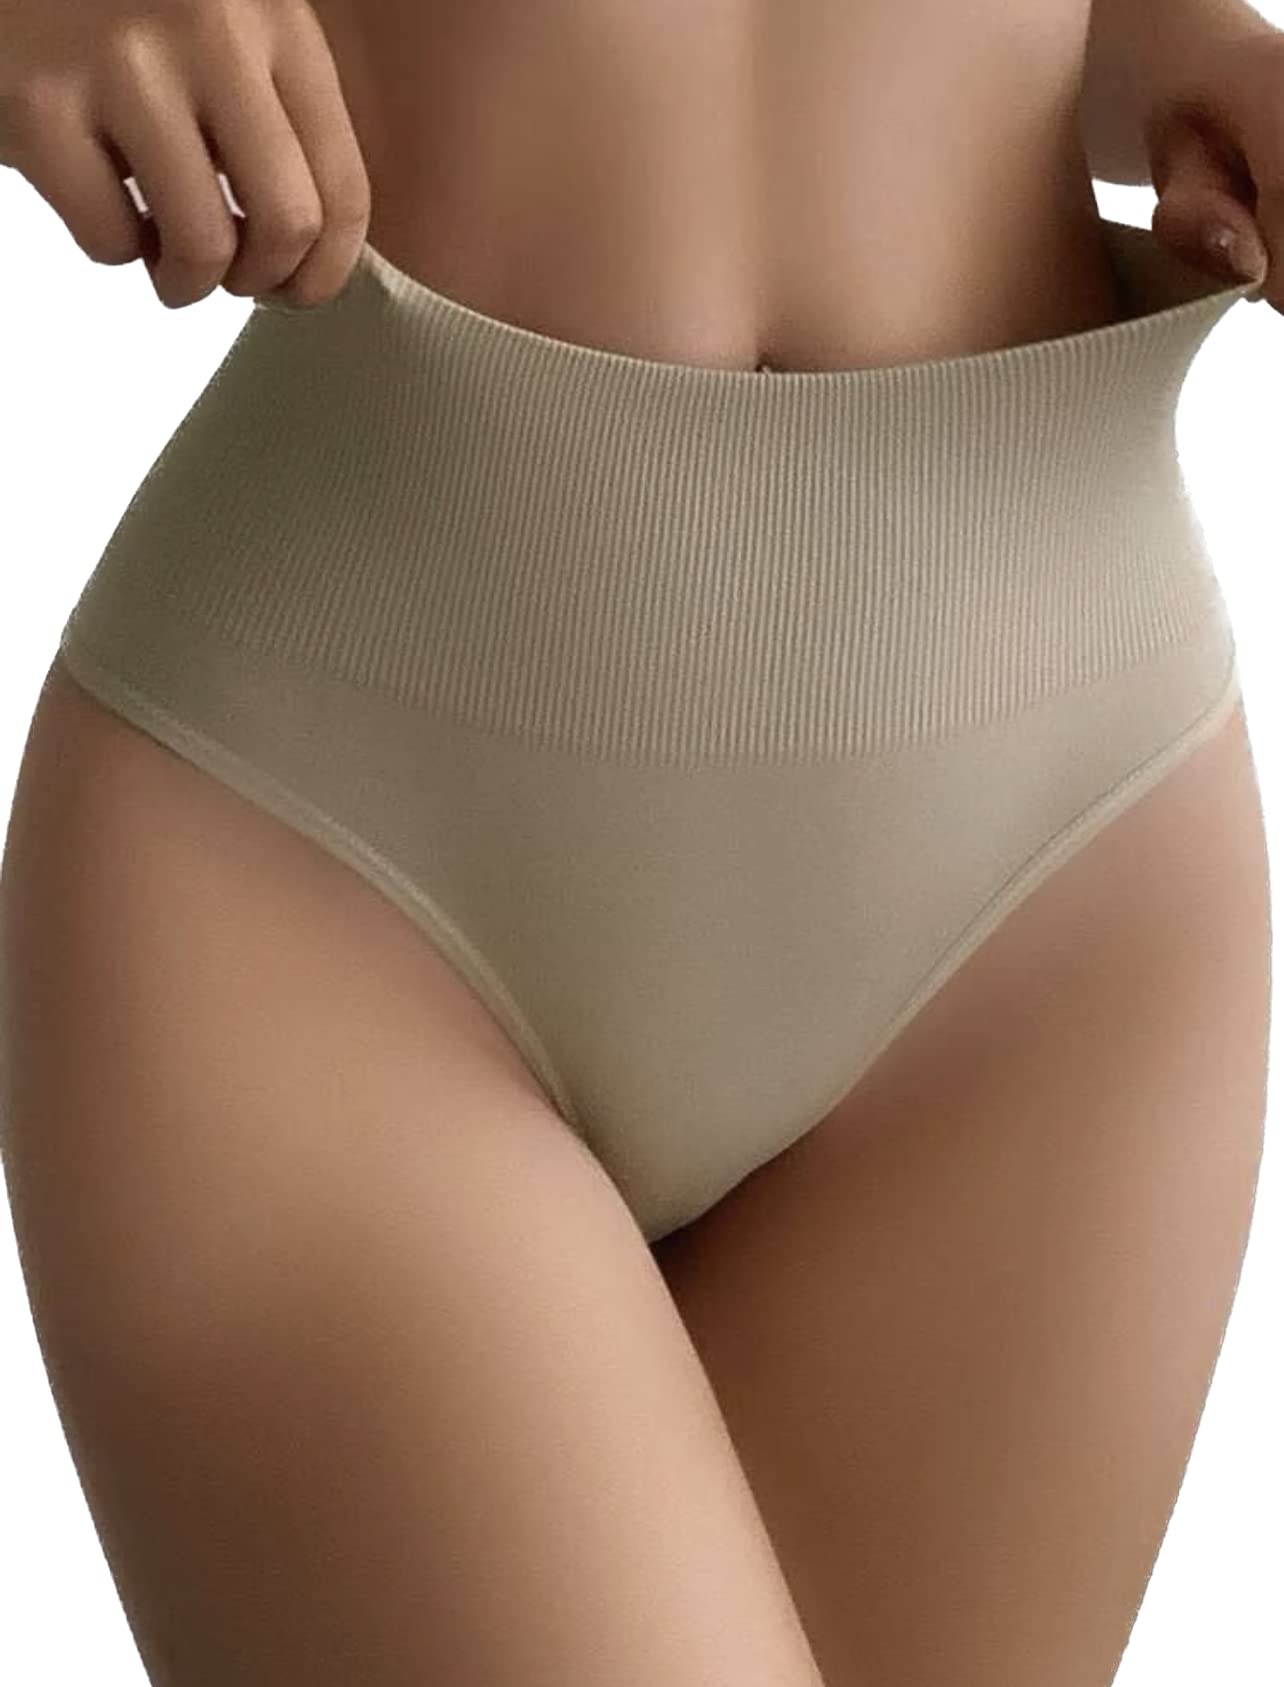 Panty Faja para Mujer de Compresión Abdomen Invisible - Calzón Control Cintura Alta - High Waisted Panty II- Moldea la Figura Silueta - Shapewear - Hannah White 